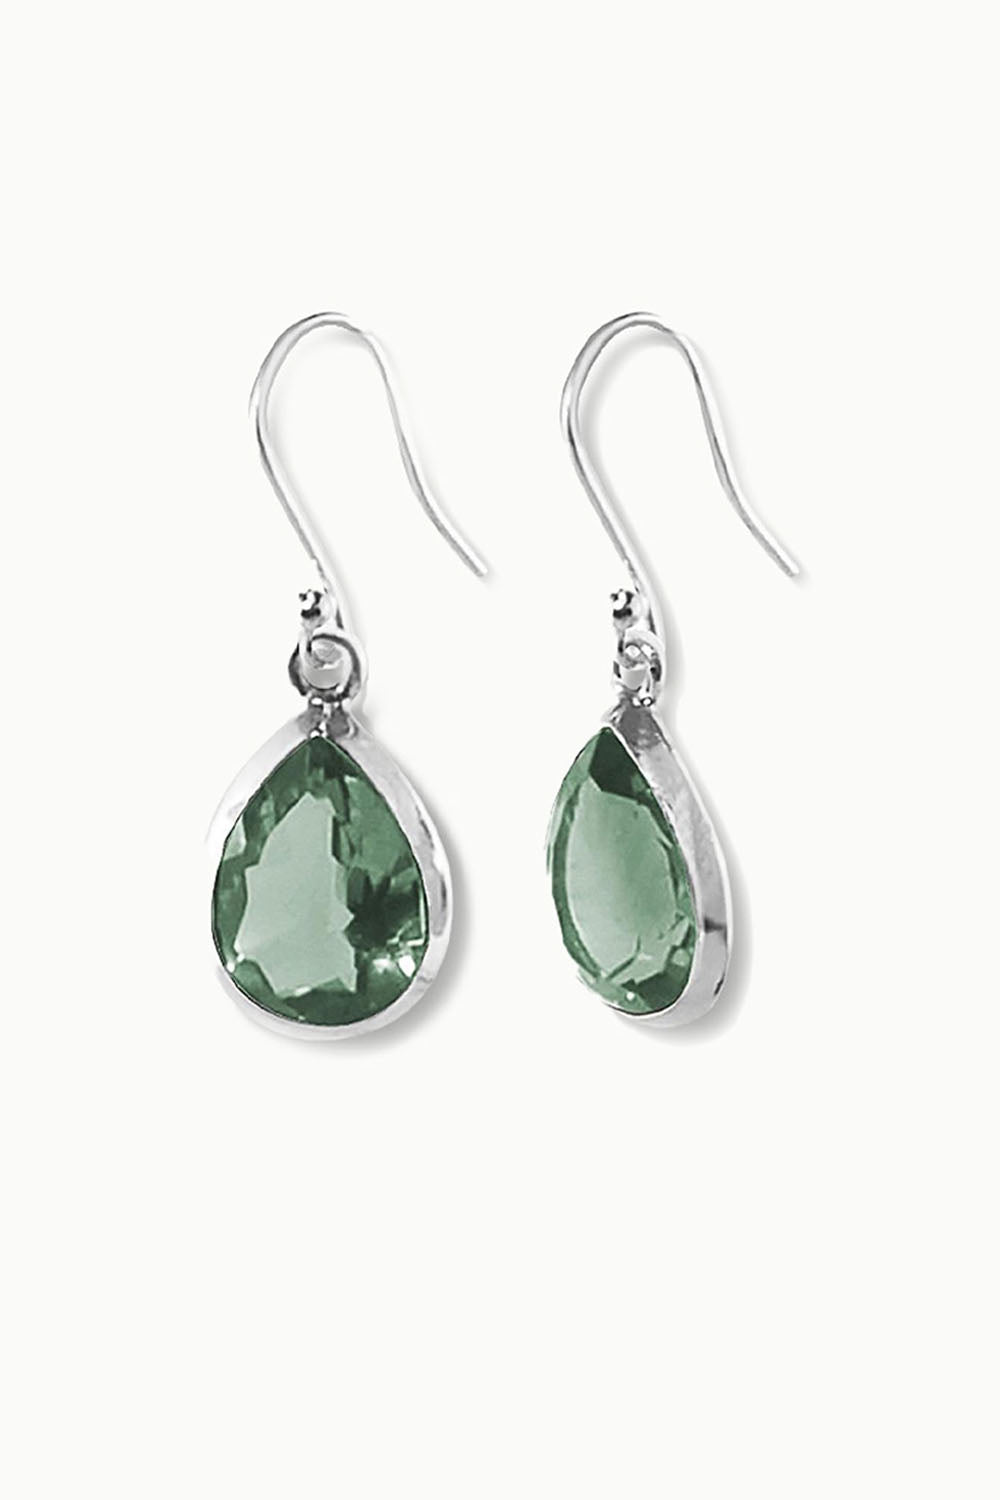 Green Amethyst Silver Earrings- Bliss